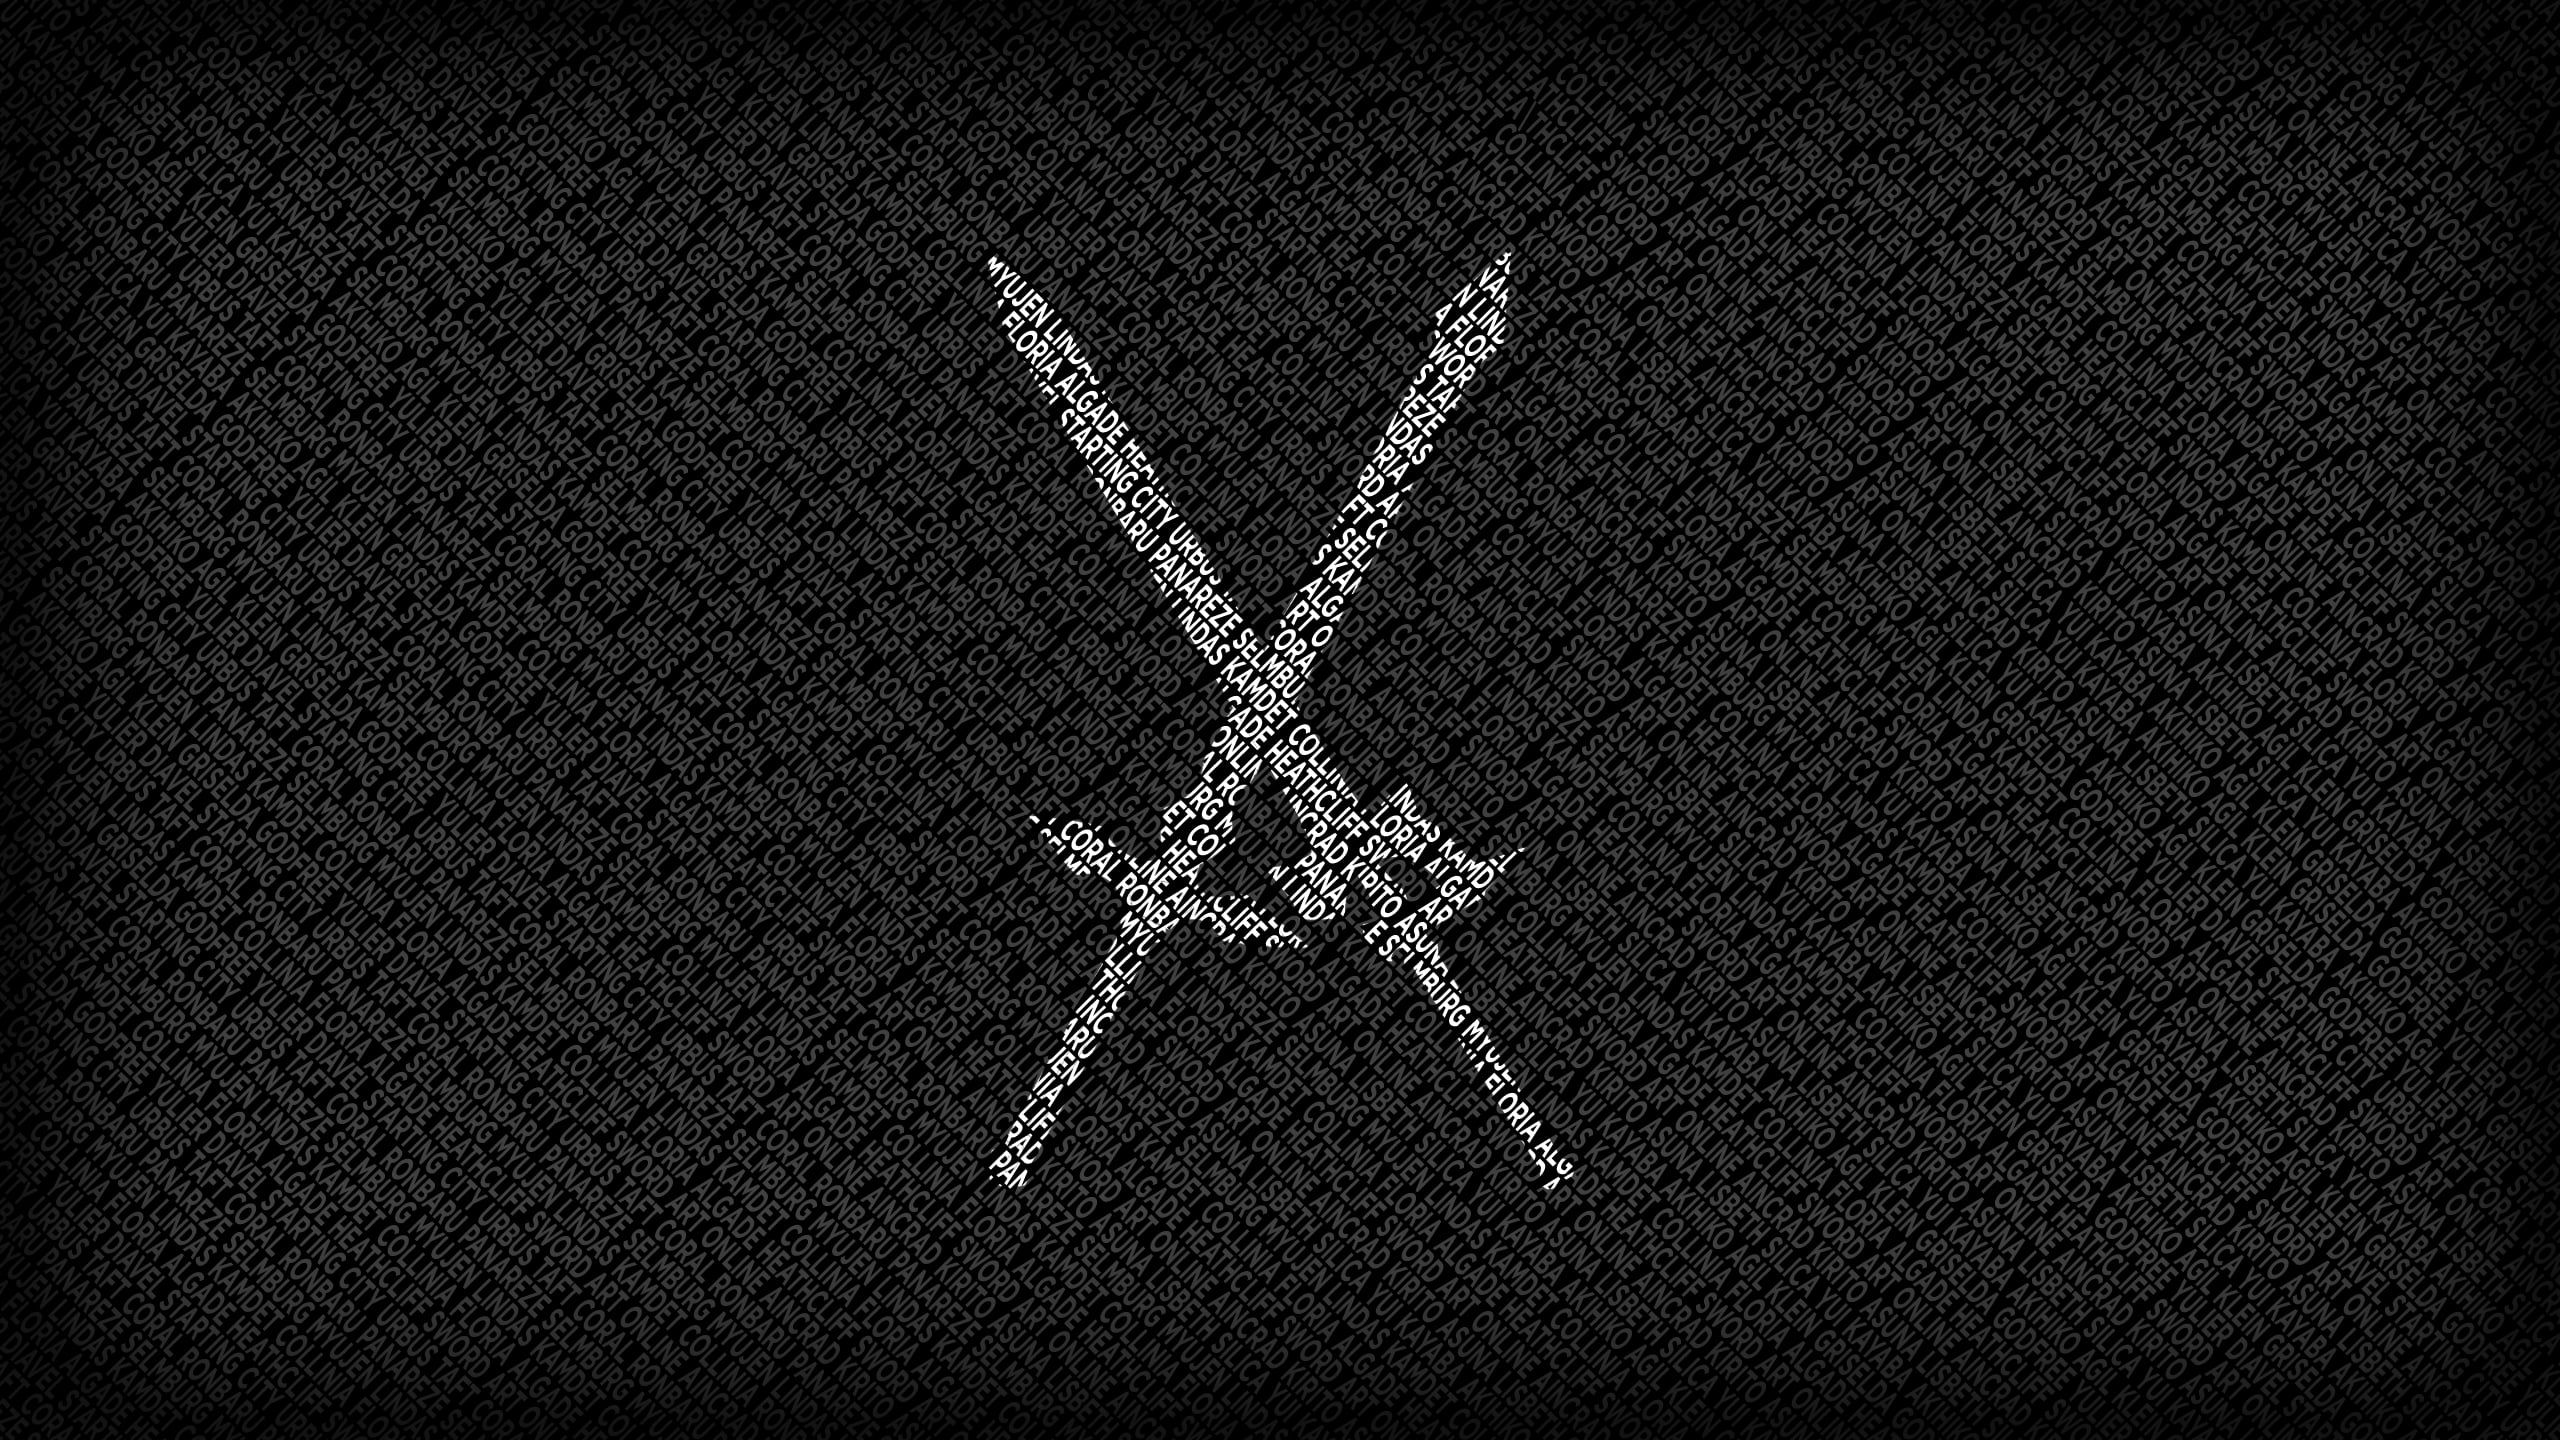 black and white swords digital wallpaper, two white sword logo Sword Art Online video games K #wallpape. Sword art online poster, Sword logo, Digital wallpaper